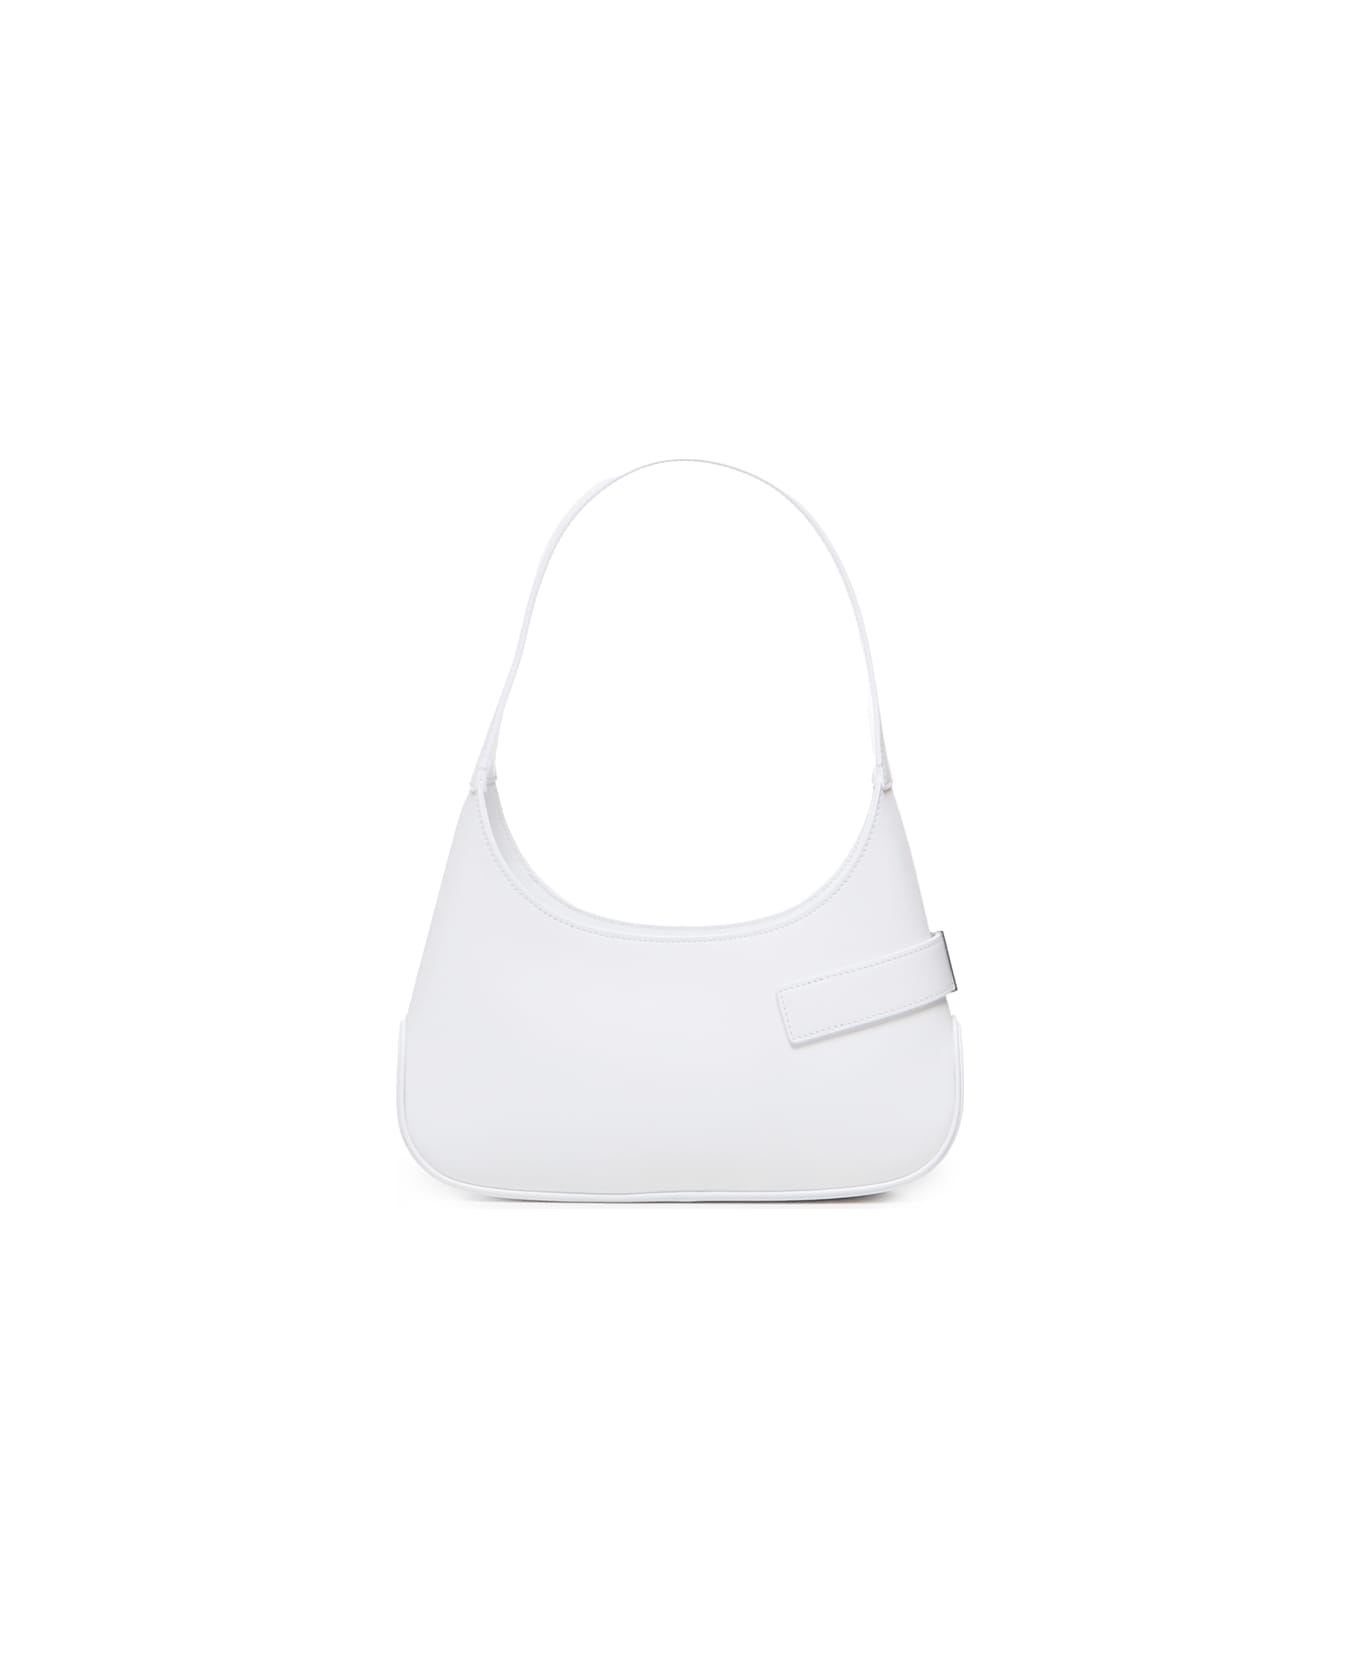 Ferragamo Medium Leather Shoulder Bag - White トートバッグ